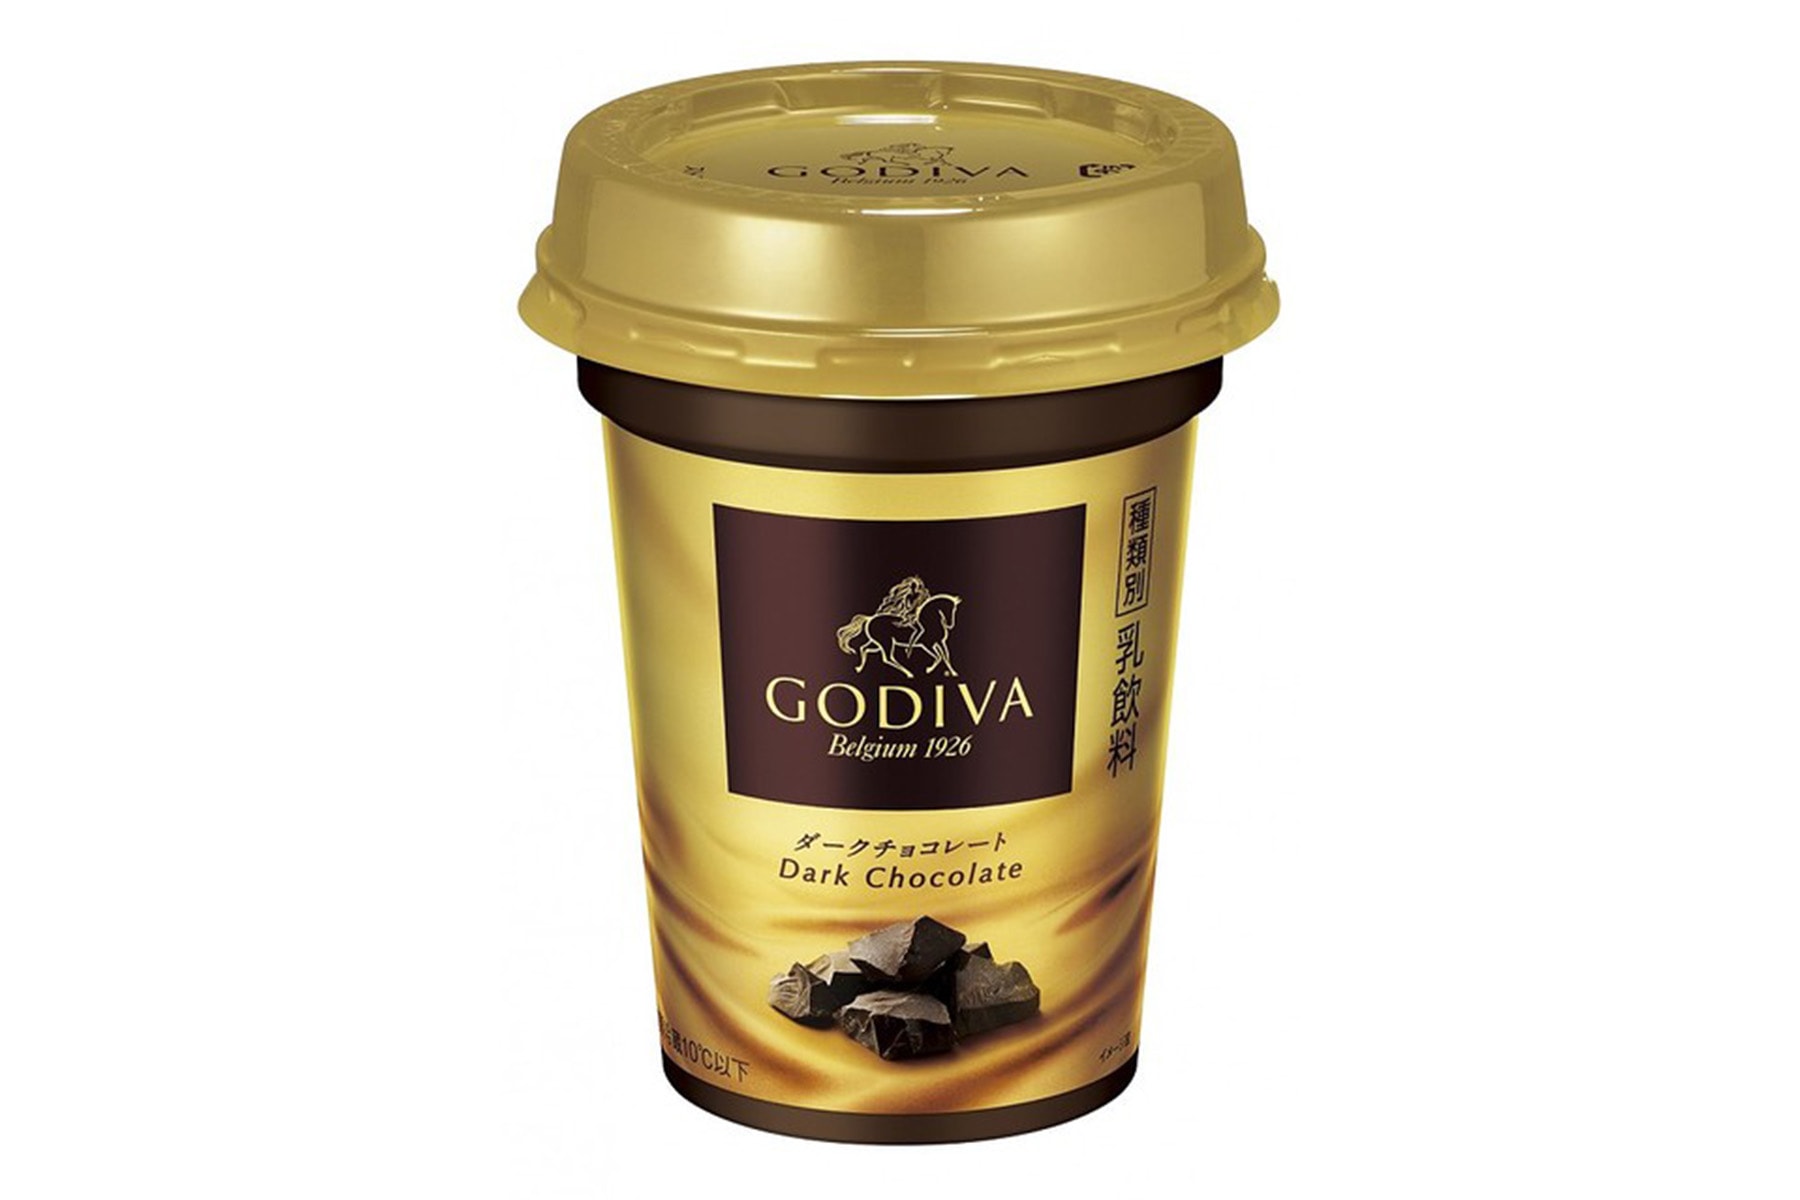 森永乳業より GODIVA 監修のデザート飲料 “ダークチョコレート” が登場 日常に贅沢な癒しをもたらす本作は、全国のコンビニエンスストアにて限定発売